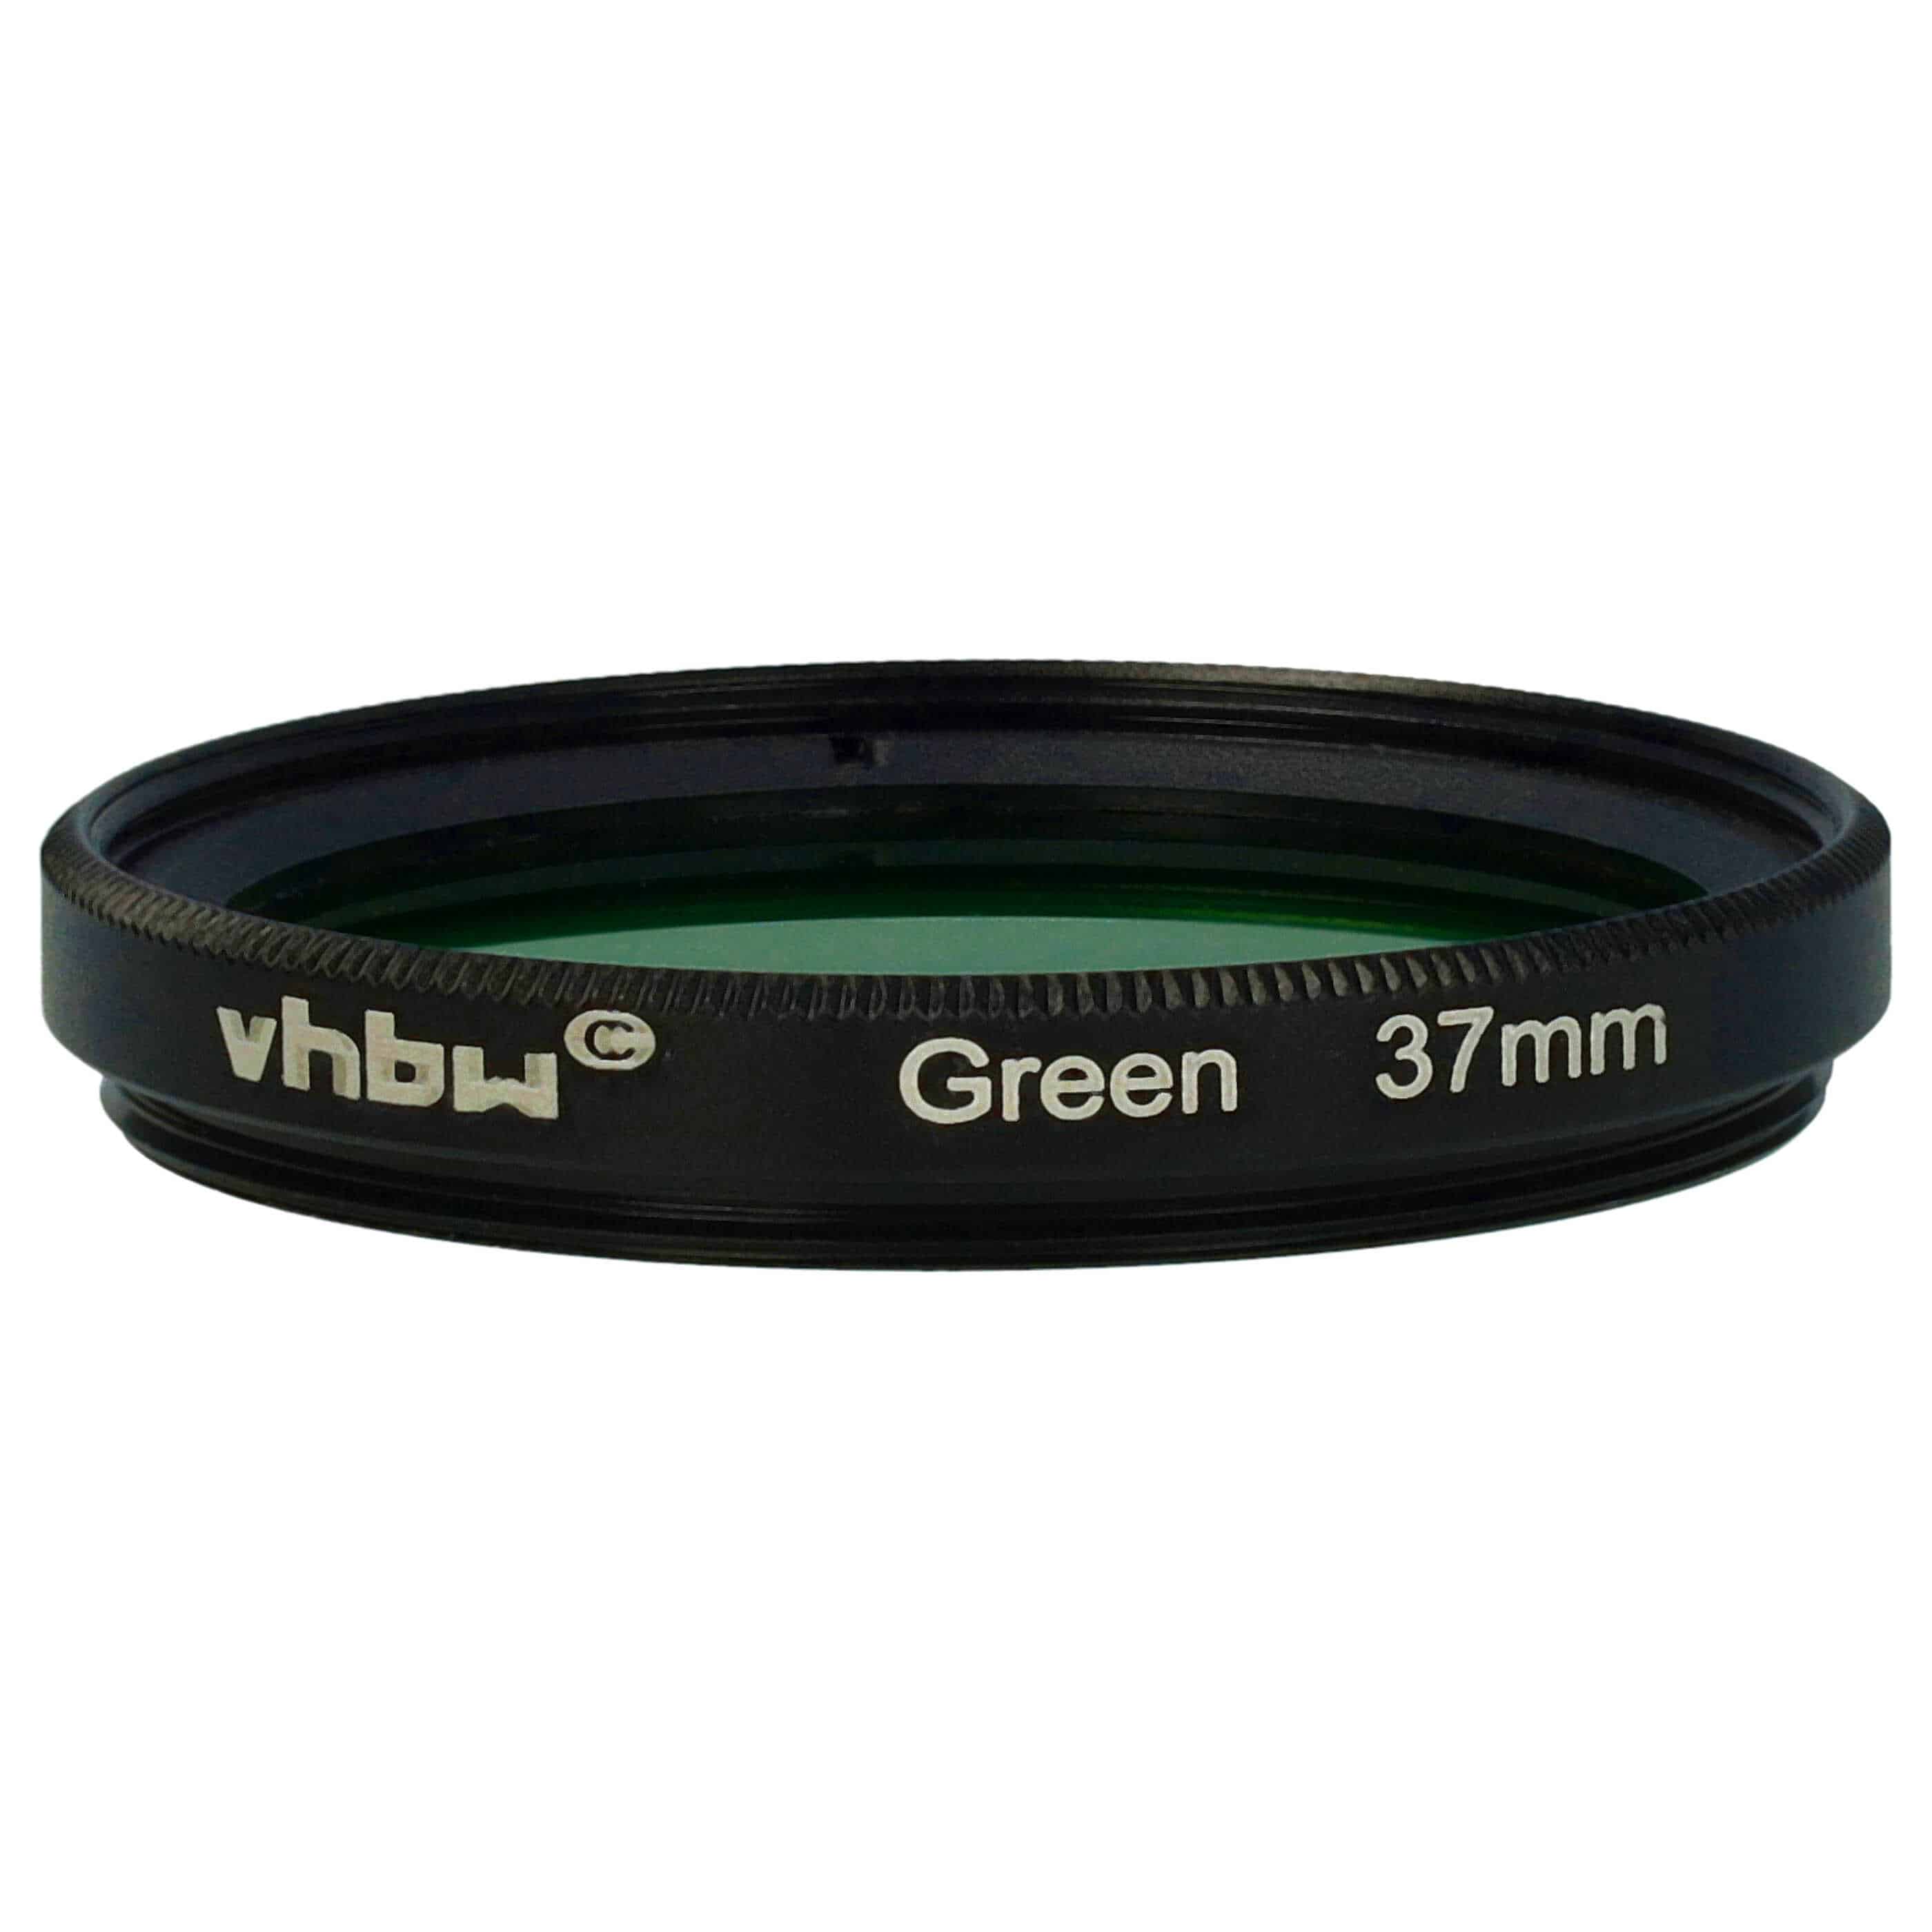 Farbfilter grün passend für Kamera Objektive mit 37 mm Filtergewinde - Grünfilter